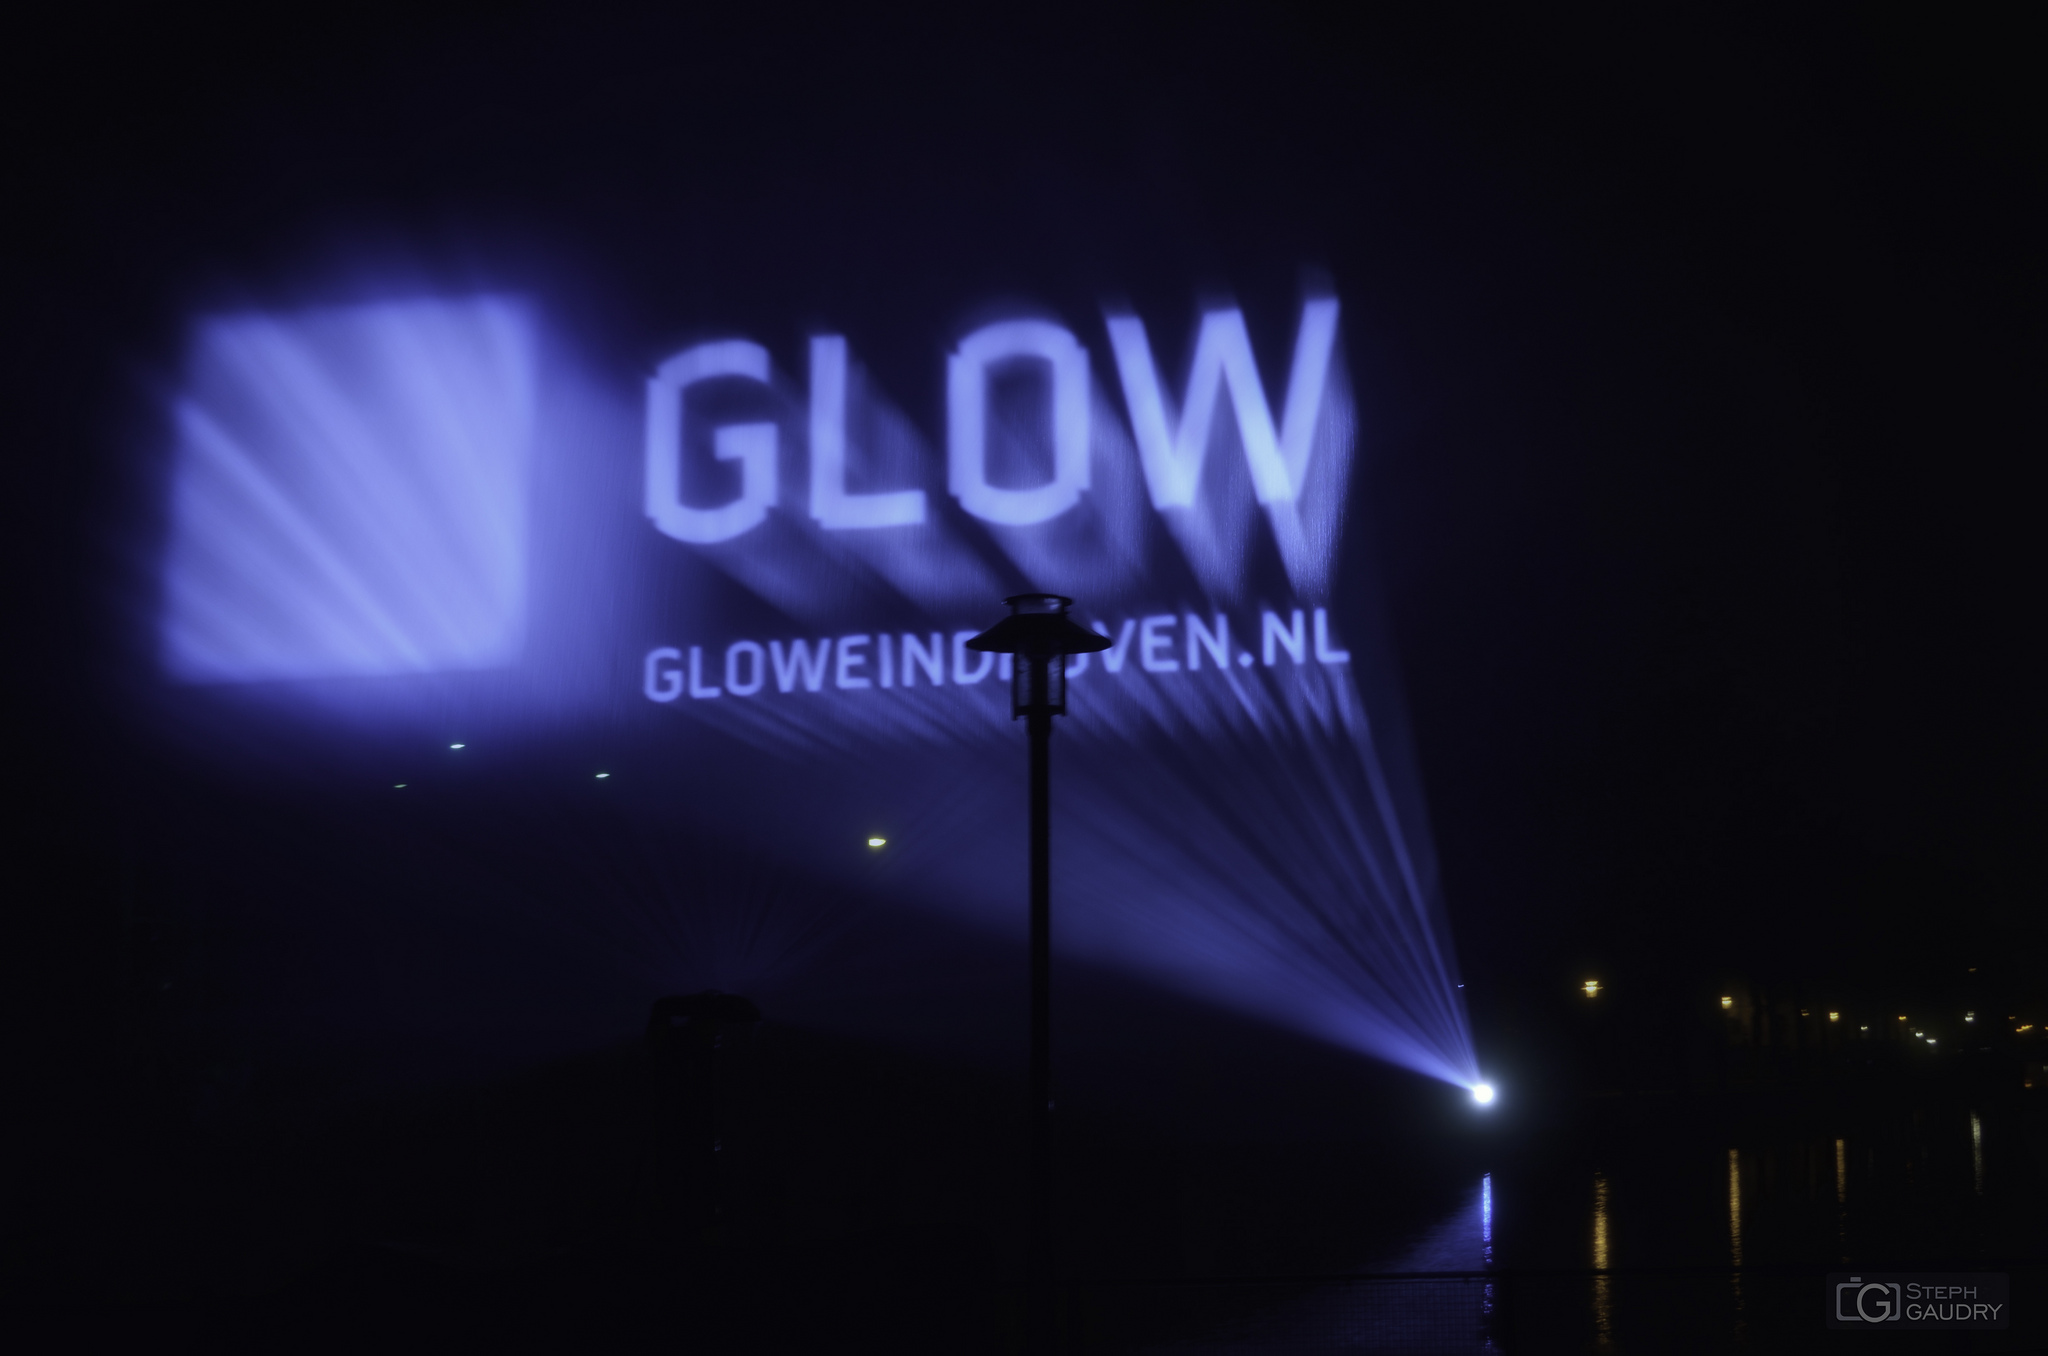 Eindhoven glow 2013 - Laser [Cliquez pour lancer le diaporama]